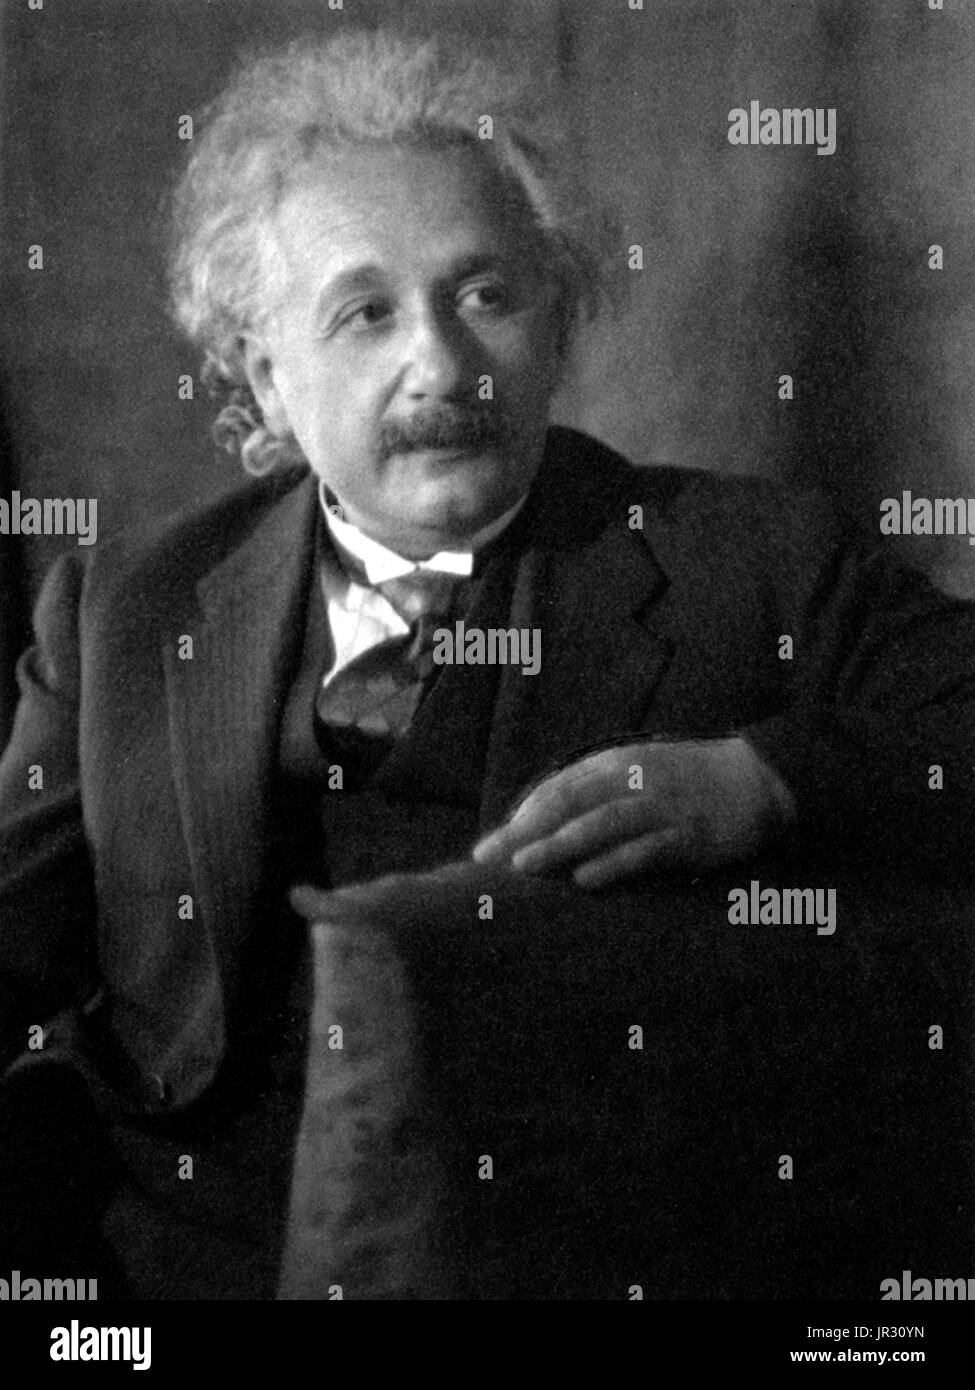 Albert Einstein, physicien germano-américain Banque D'Images